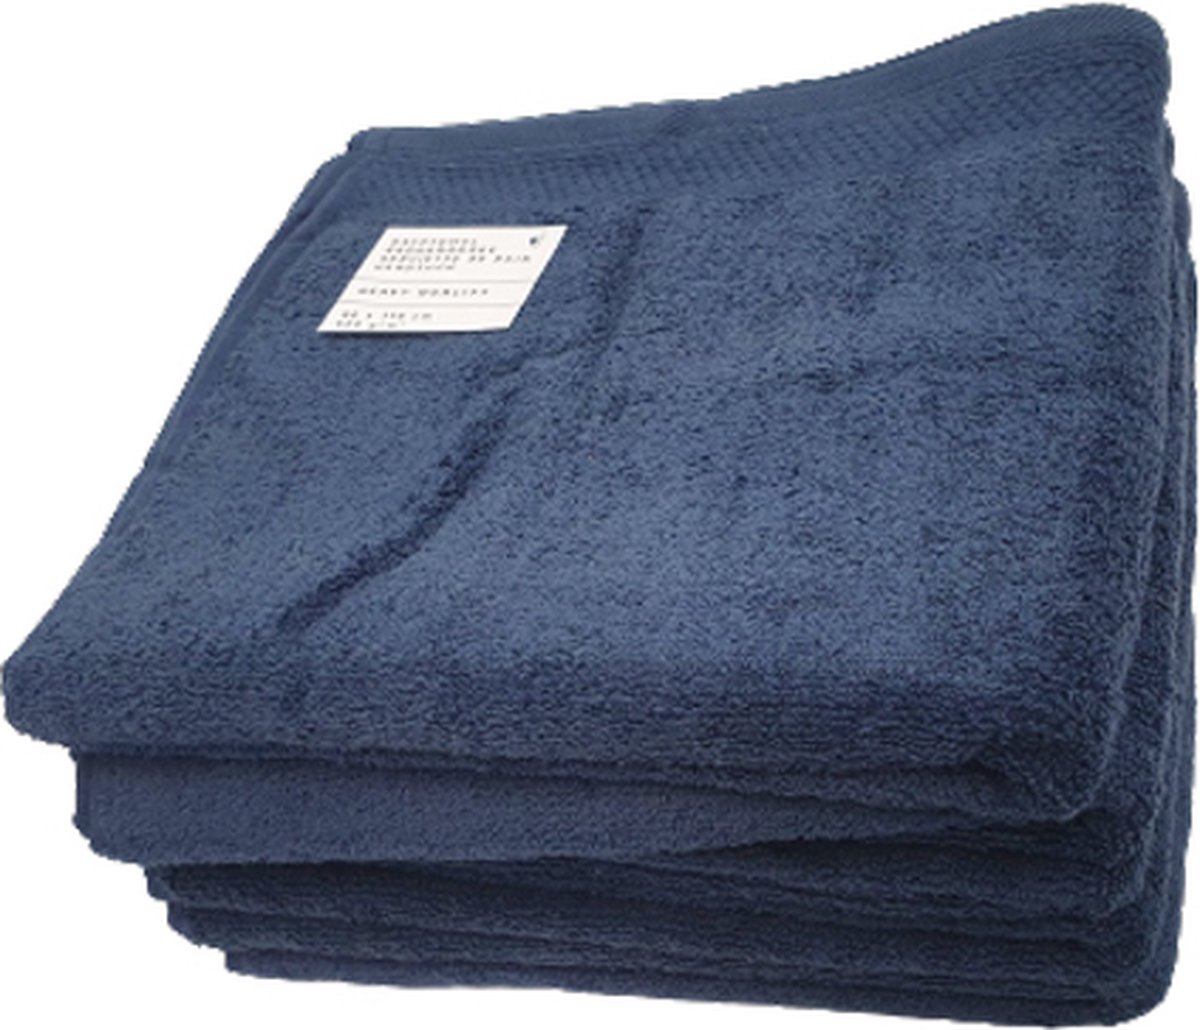 5x Handdoek Blauw | 70 x 140 cm | Hotelkwaliteit 550 gr m2